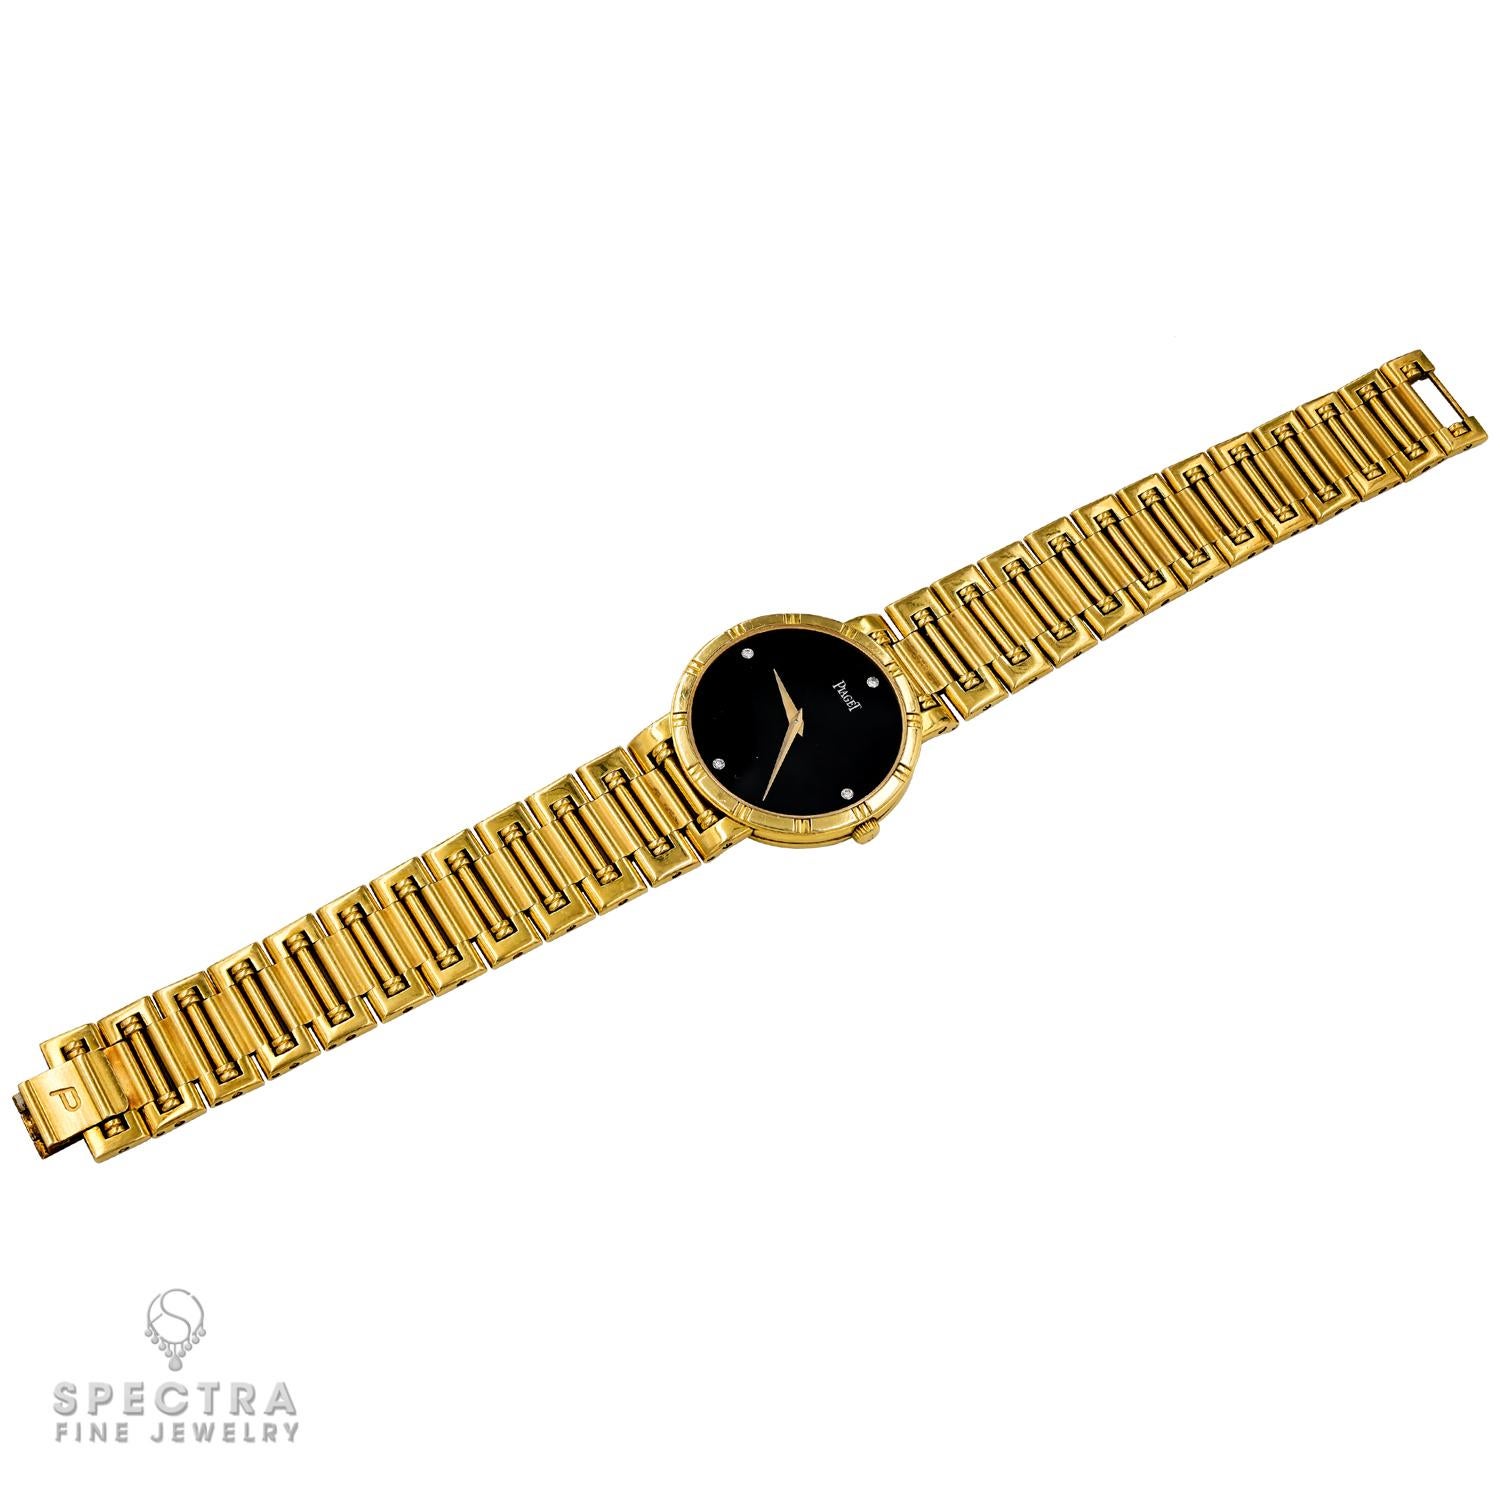 Élevez votre style avec la sophistication intemporelle de la montre pour femmes Piaget Dancer Diamond Onyx Dial. Réalisé en or jaune 18 carats, ce garde-temps exquis respire le luxe sous toutes ses coutures.

Le saisissant cadran en onyx noir sert